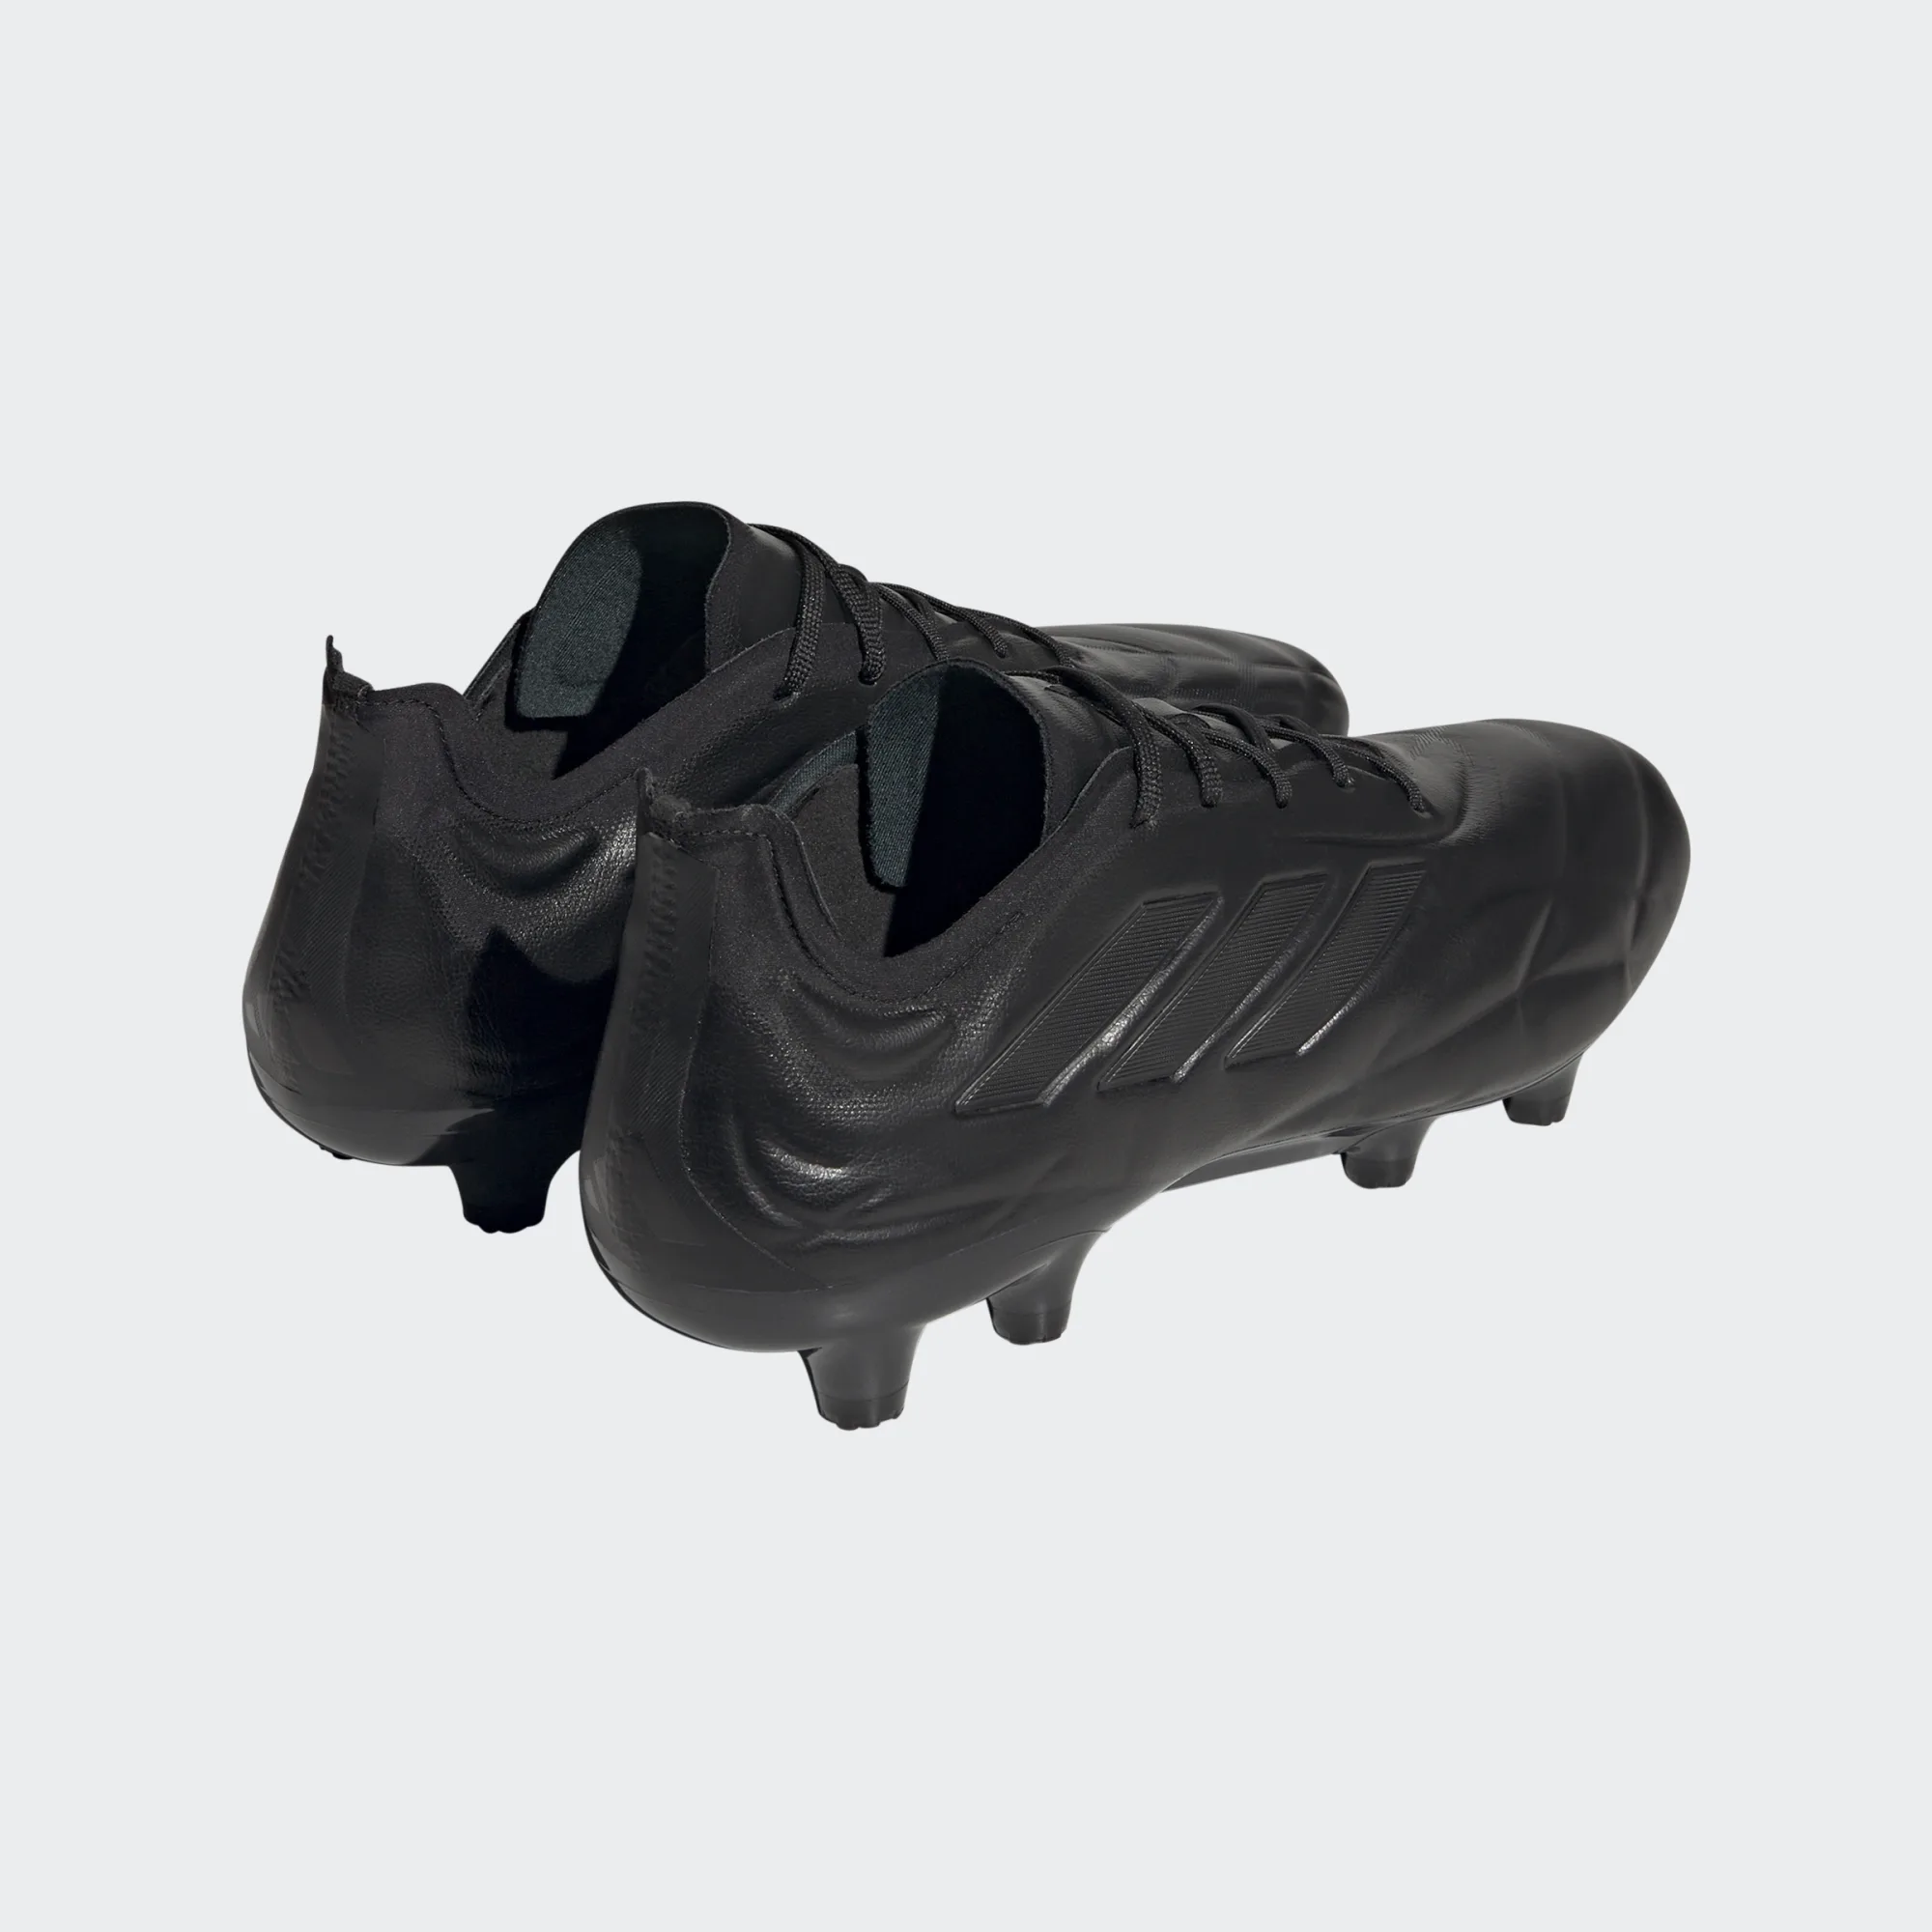 adidas HQ8905 Copa Pure.1 FG Fussballschuhe all black. Auf Wunsch mit durchgenähter Sohle.